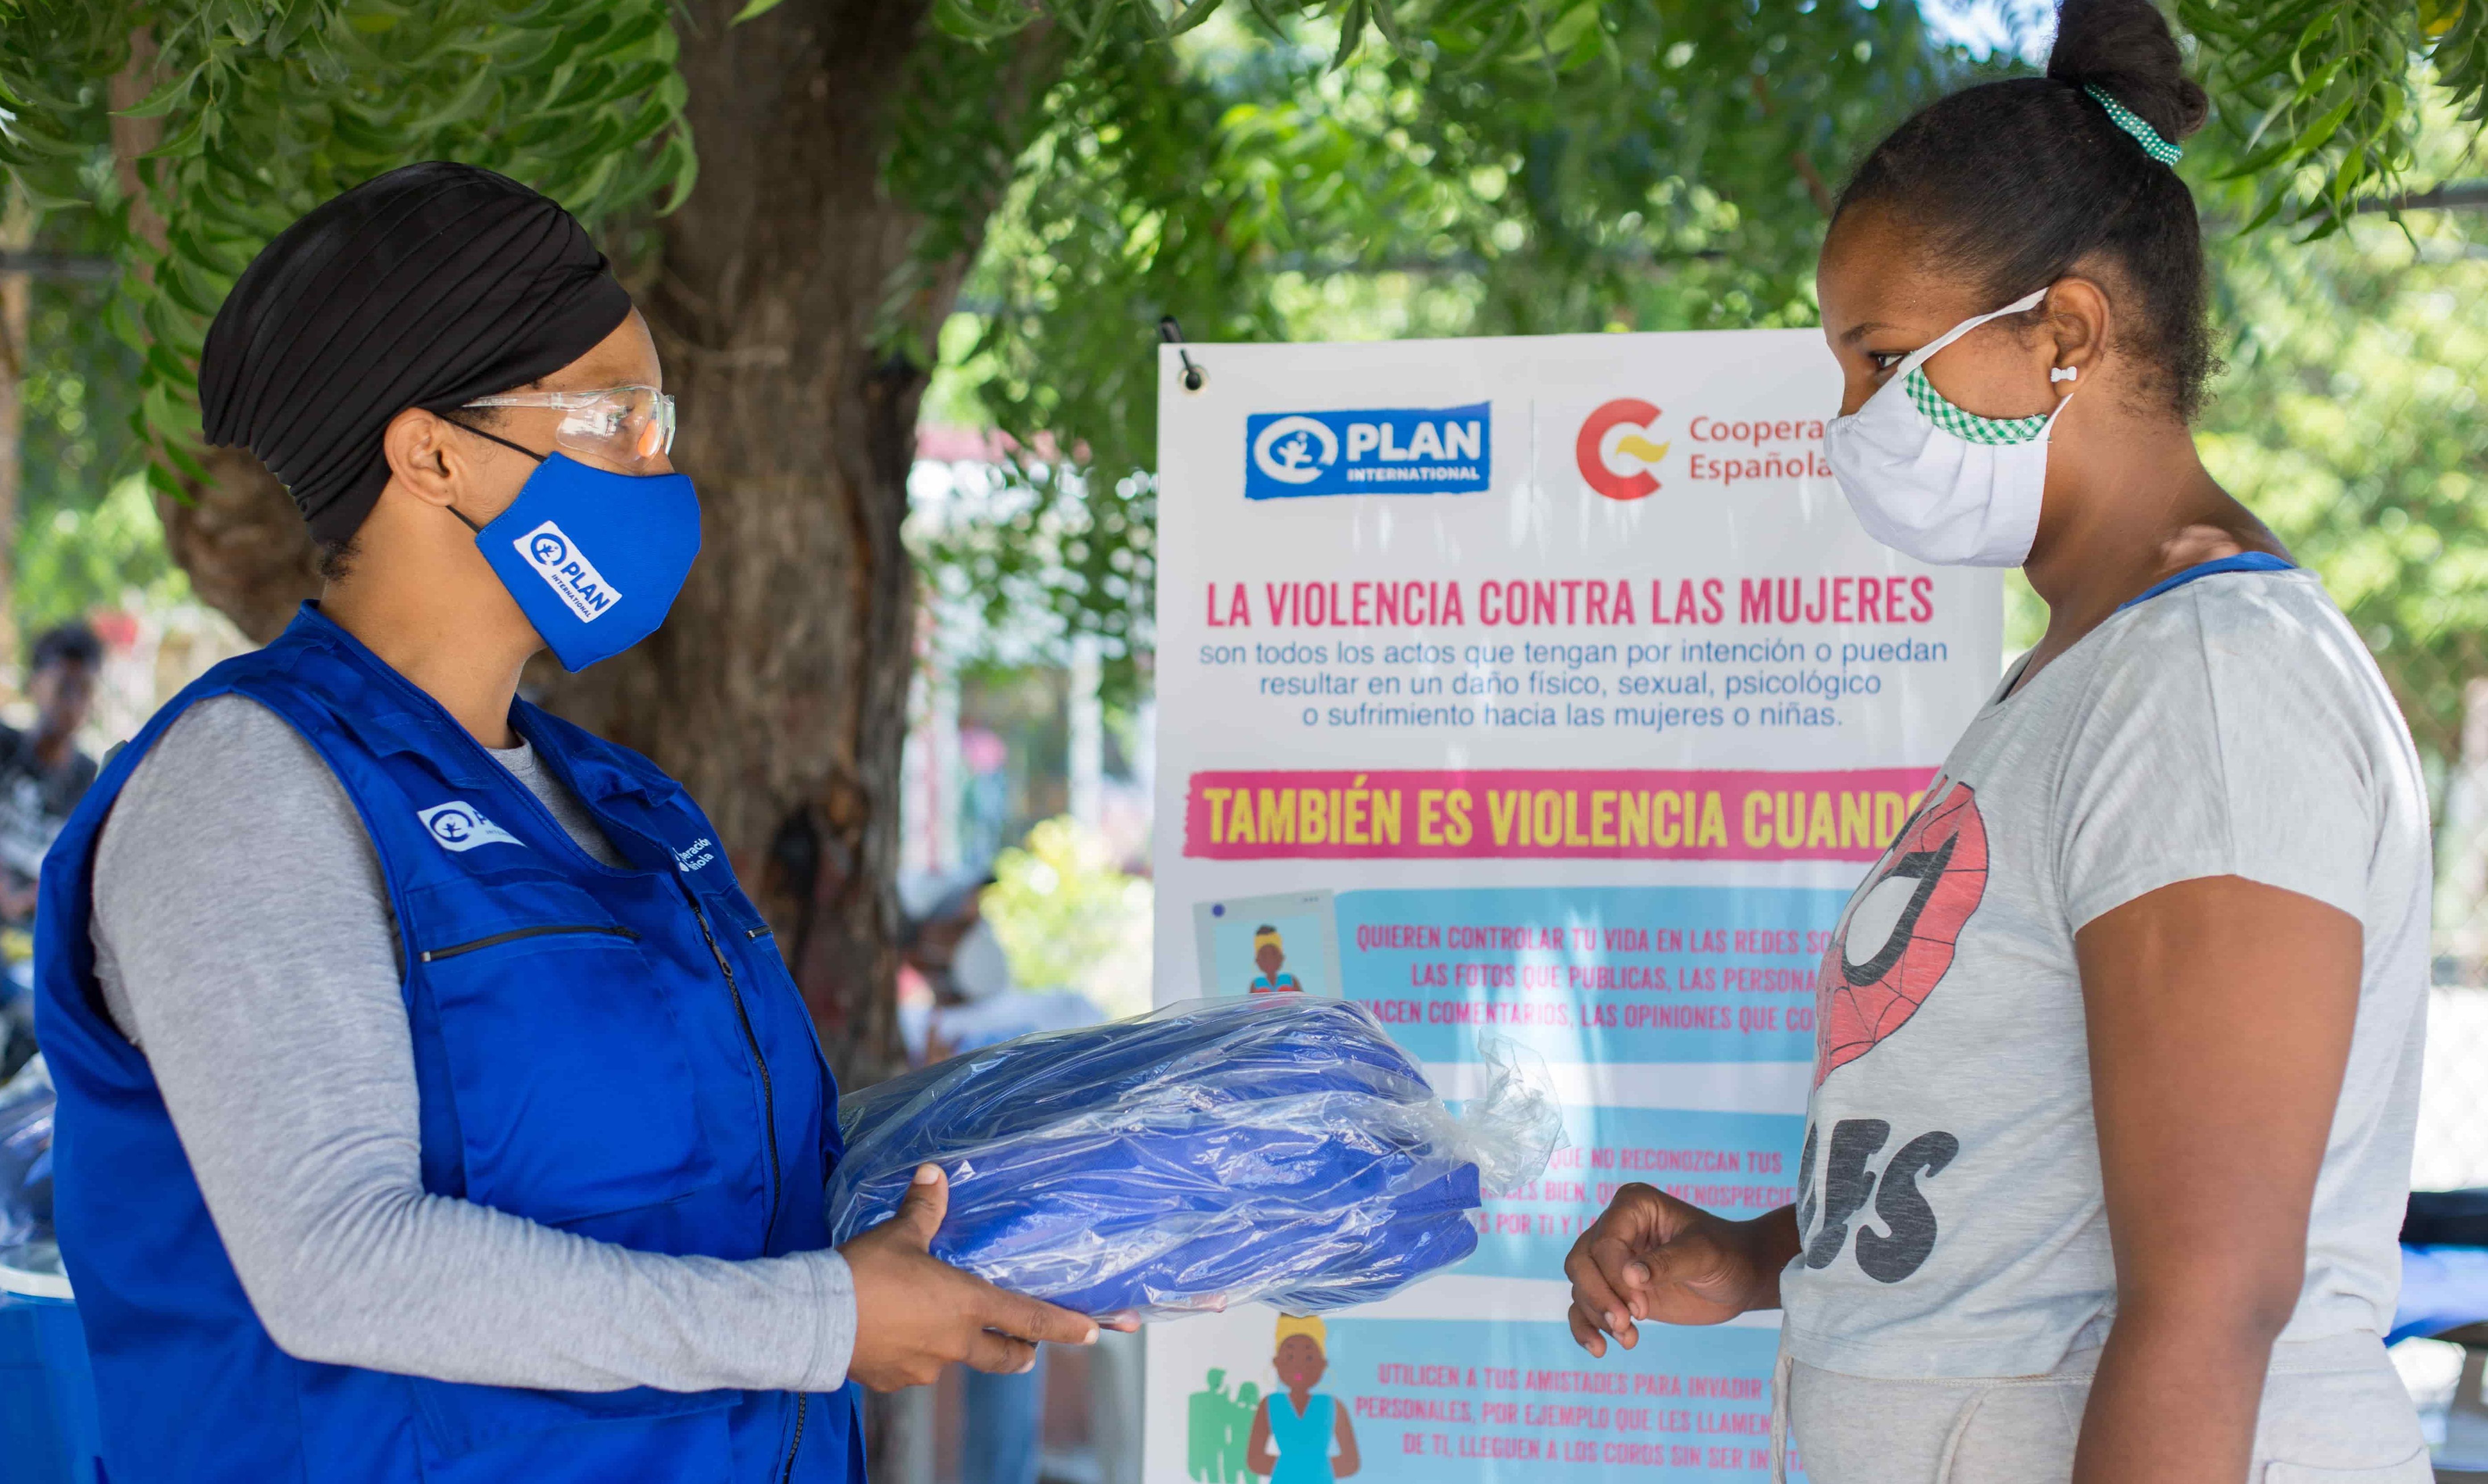 ONG entrega donaciones financiadas por España para paliar efectos del coronavirus